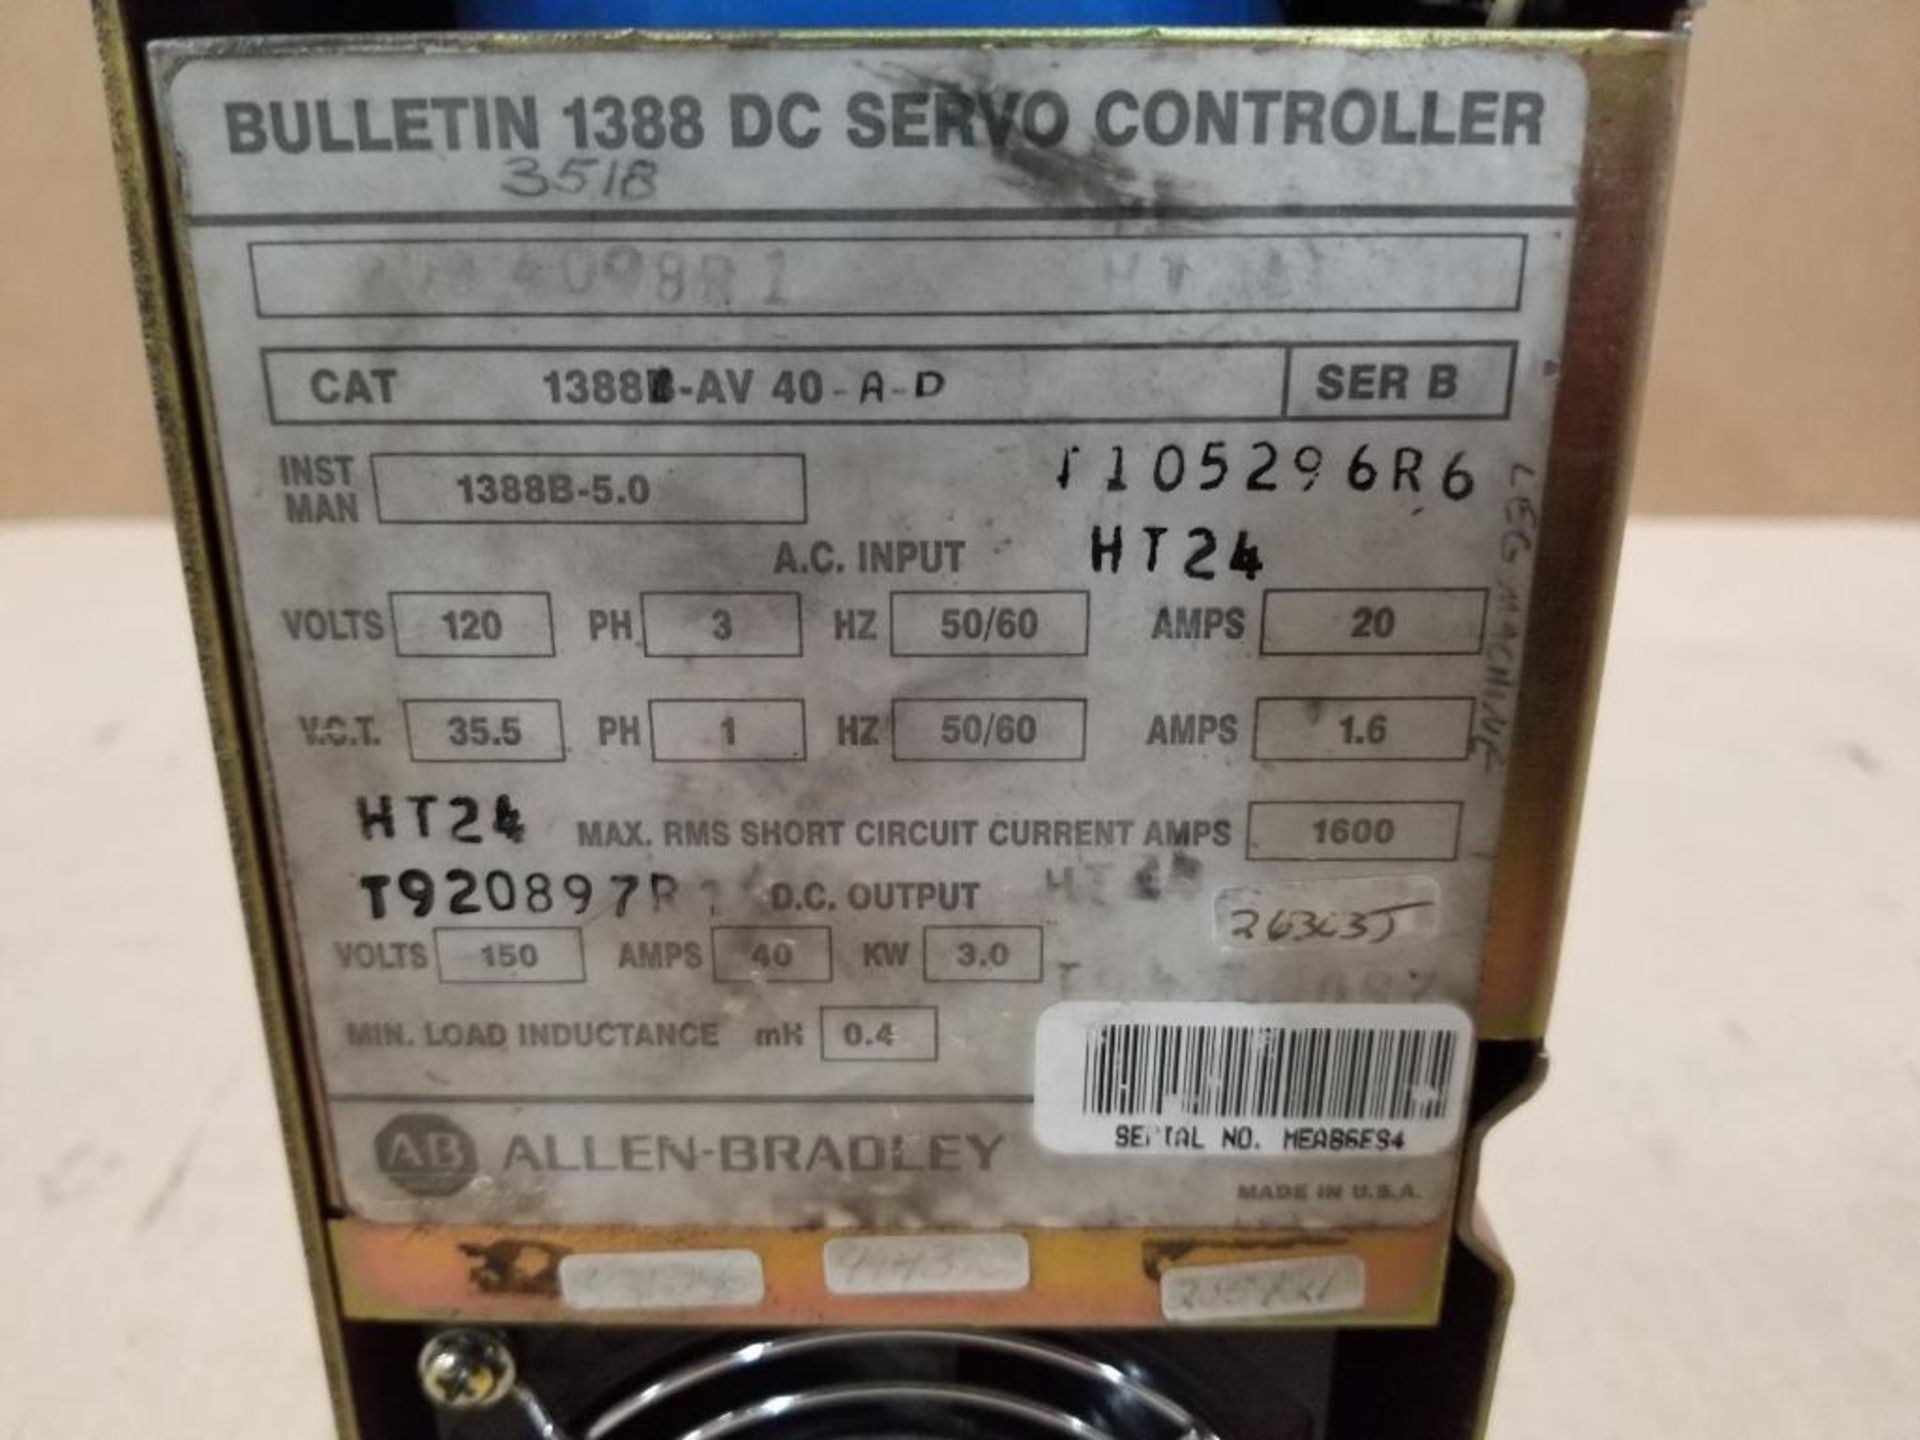 Allen Bradley DC servo controller. Catalog 1388-AV-40-A-D. - Image 2 of 4